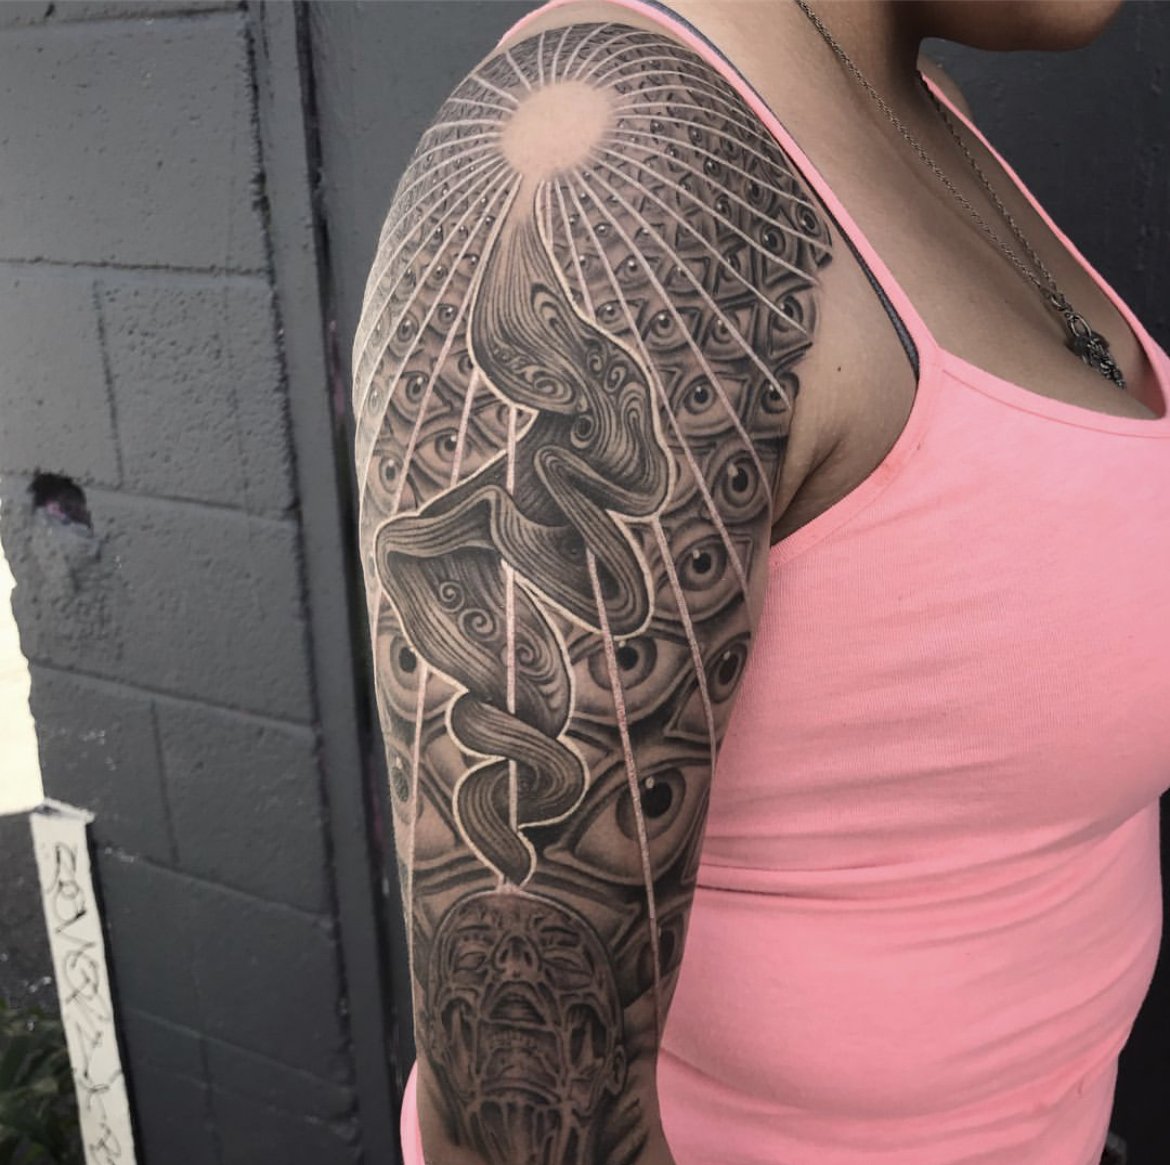 Black Anchor Tattoo Studio - TOOL EYE 👁️ Tattoo by apprentice  @woolley_tattoos #tooltattoo #tattoo #tool #tattoos #toolband #inked # tattooed #tatuagem #toolarmy #maynardjameskeenan #tattoogyn #tattoogoiania  #tattoorealistic #tattoodo #blackandgray ...